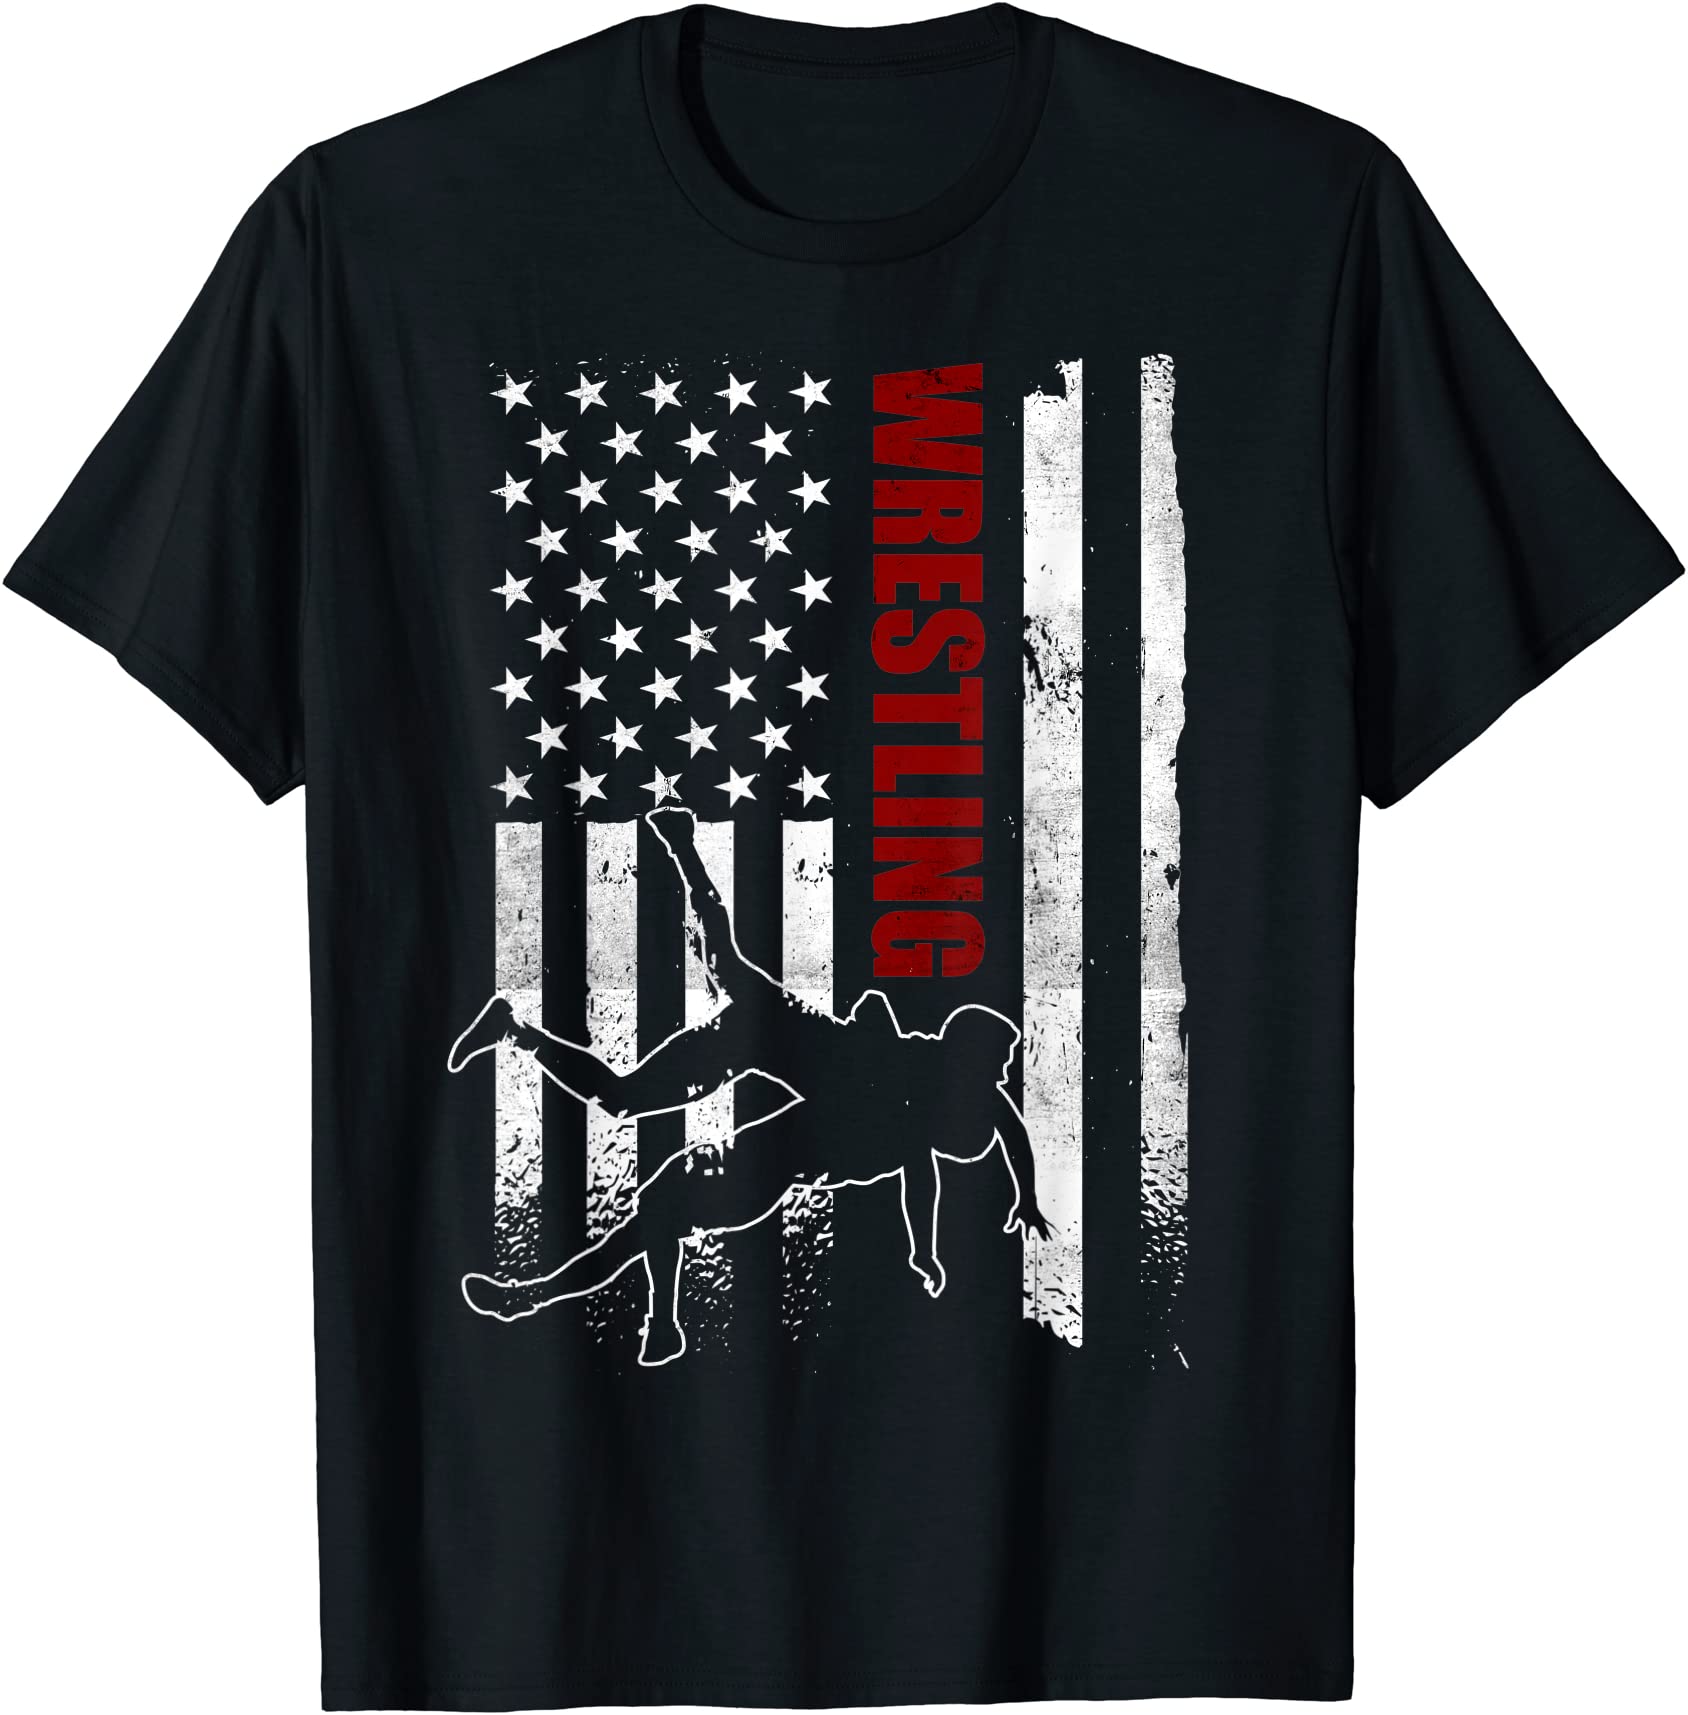 retro american wrestling apparel us flag wrestling t shirt men - Buy t ...